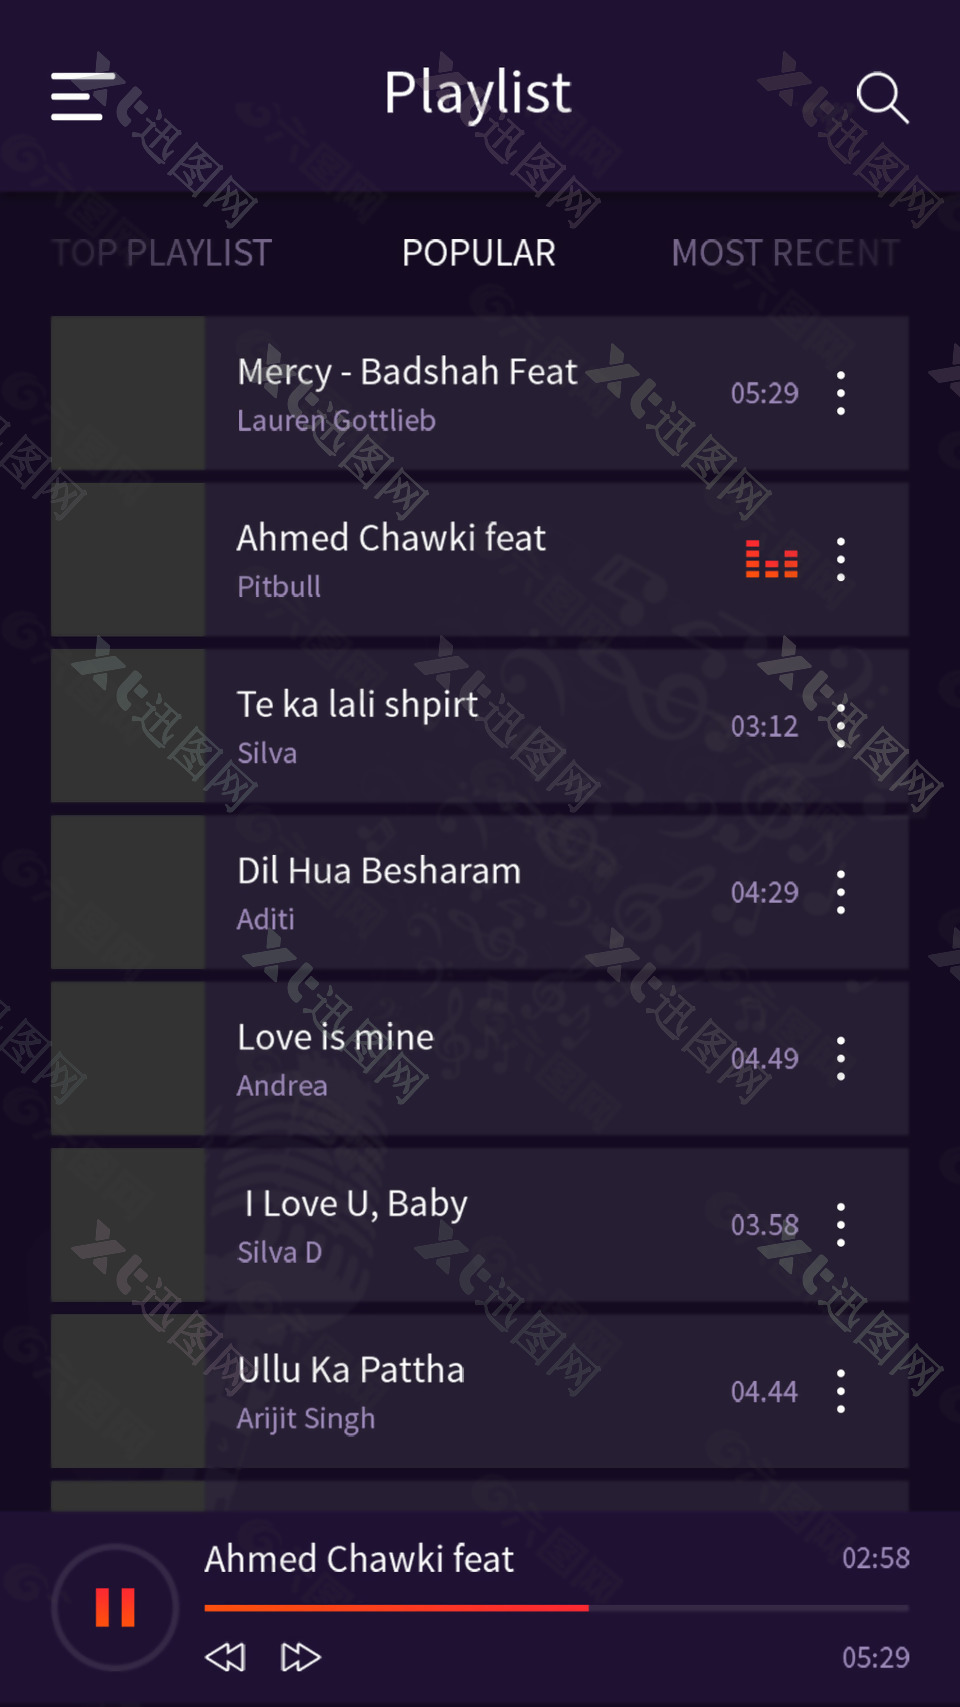 紫色酷炫音乐手机APP播放列表展示界面